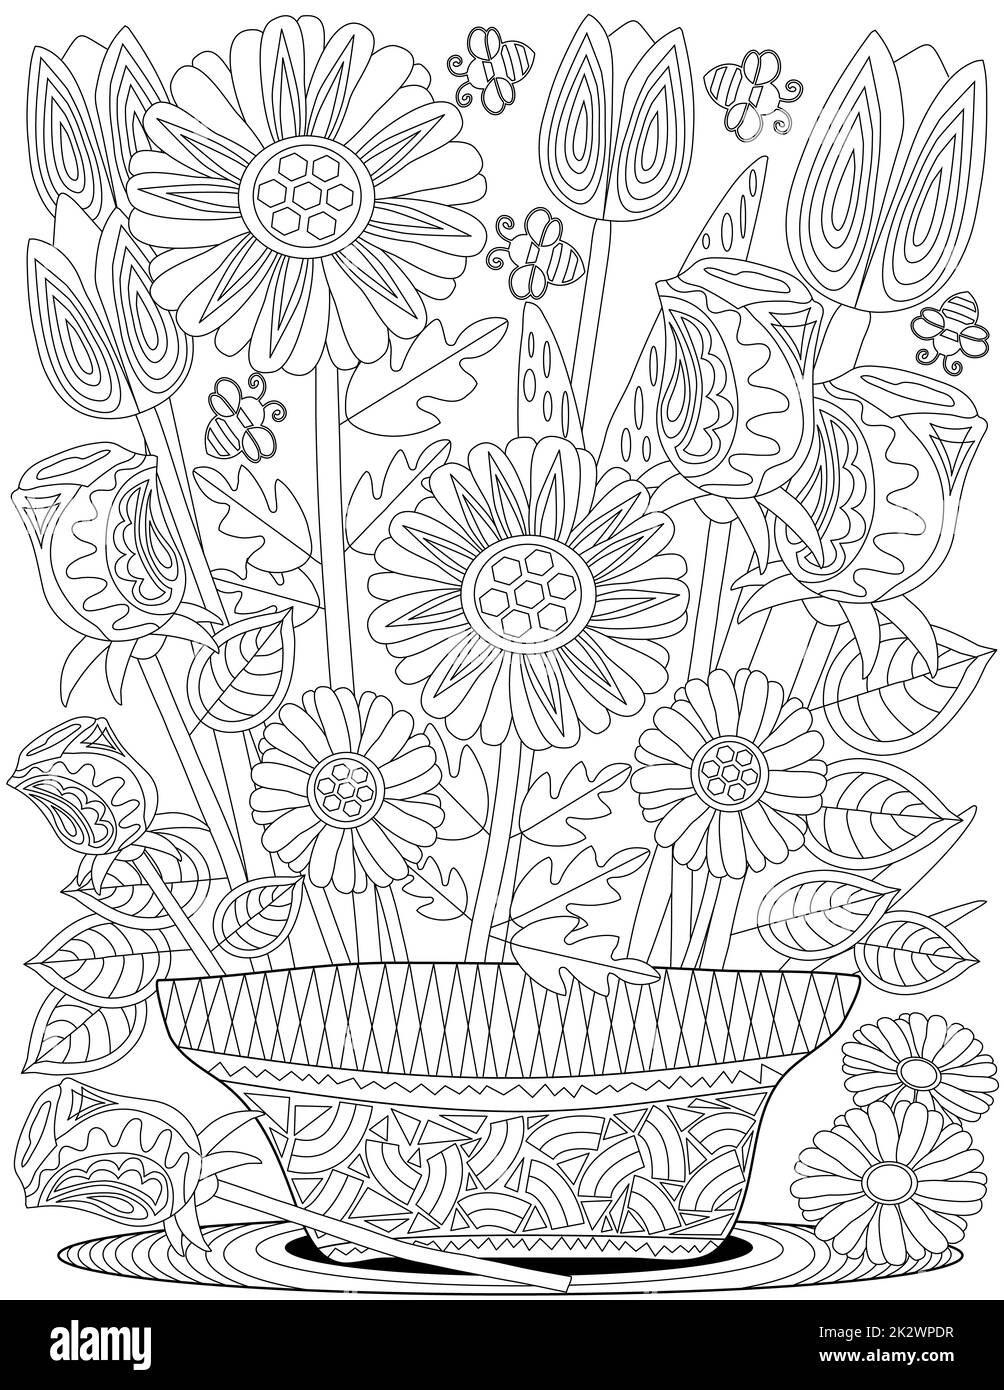 Vektorlinie, die aufwändige Blumentopf-Sonnenblumen zeichnet. Digitale lineart-Vase Tulpen schmücken den Teppich. Umreißen Sie Kunstwerke Design Blumen Laub Pflanzen Stand. Stockfoto